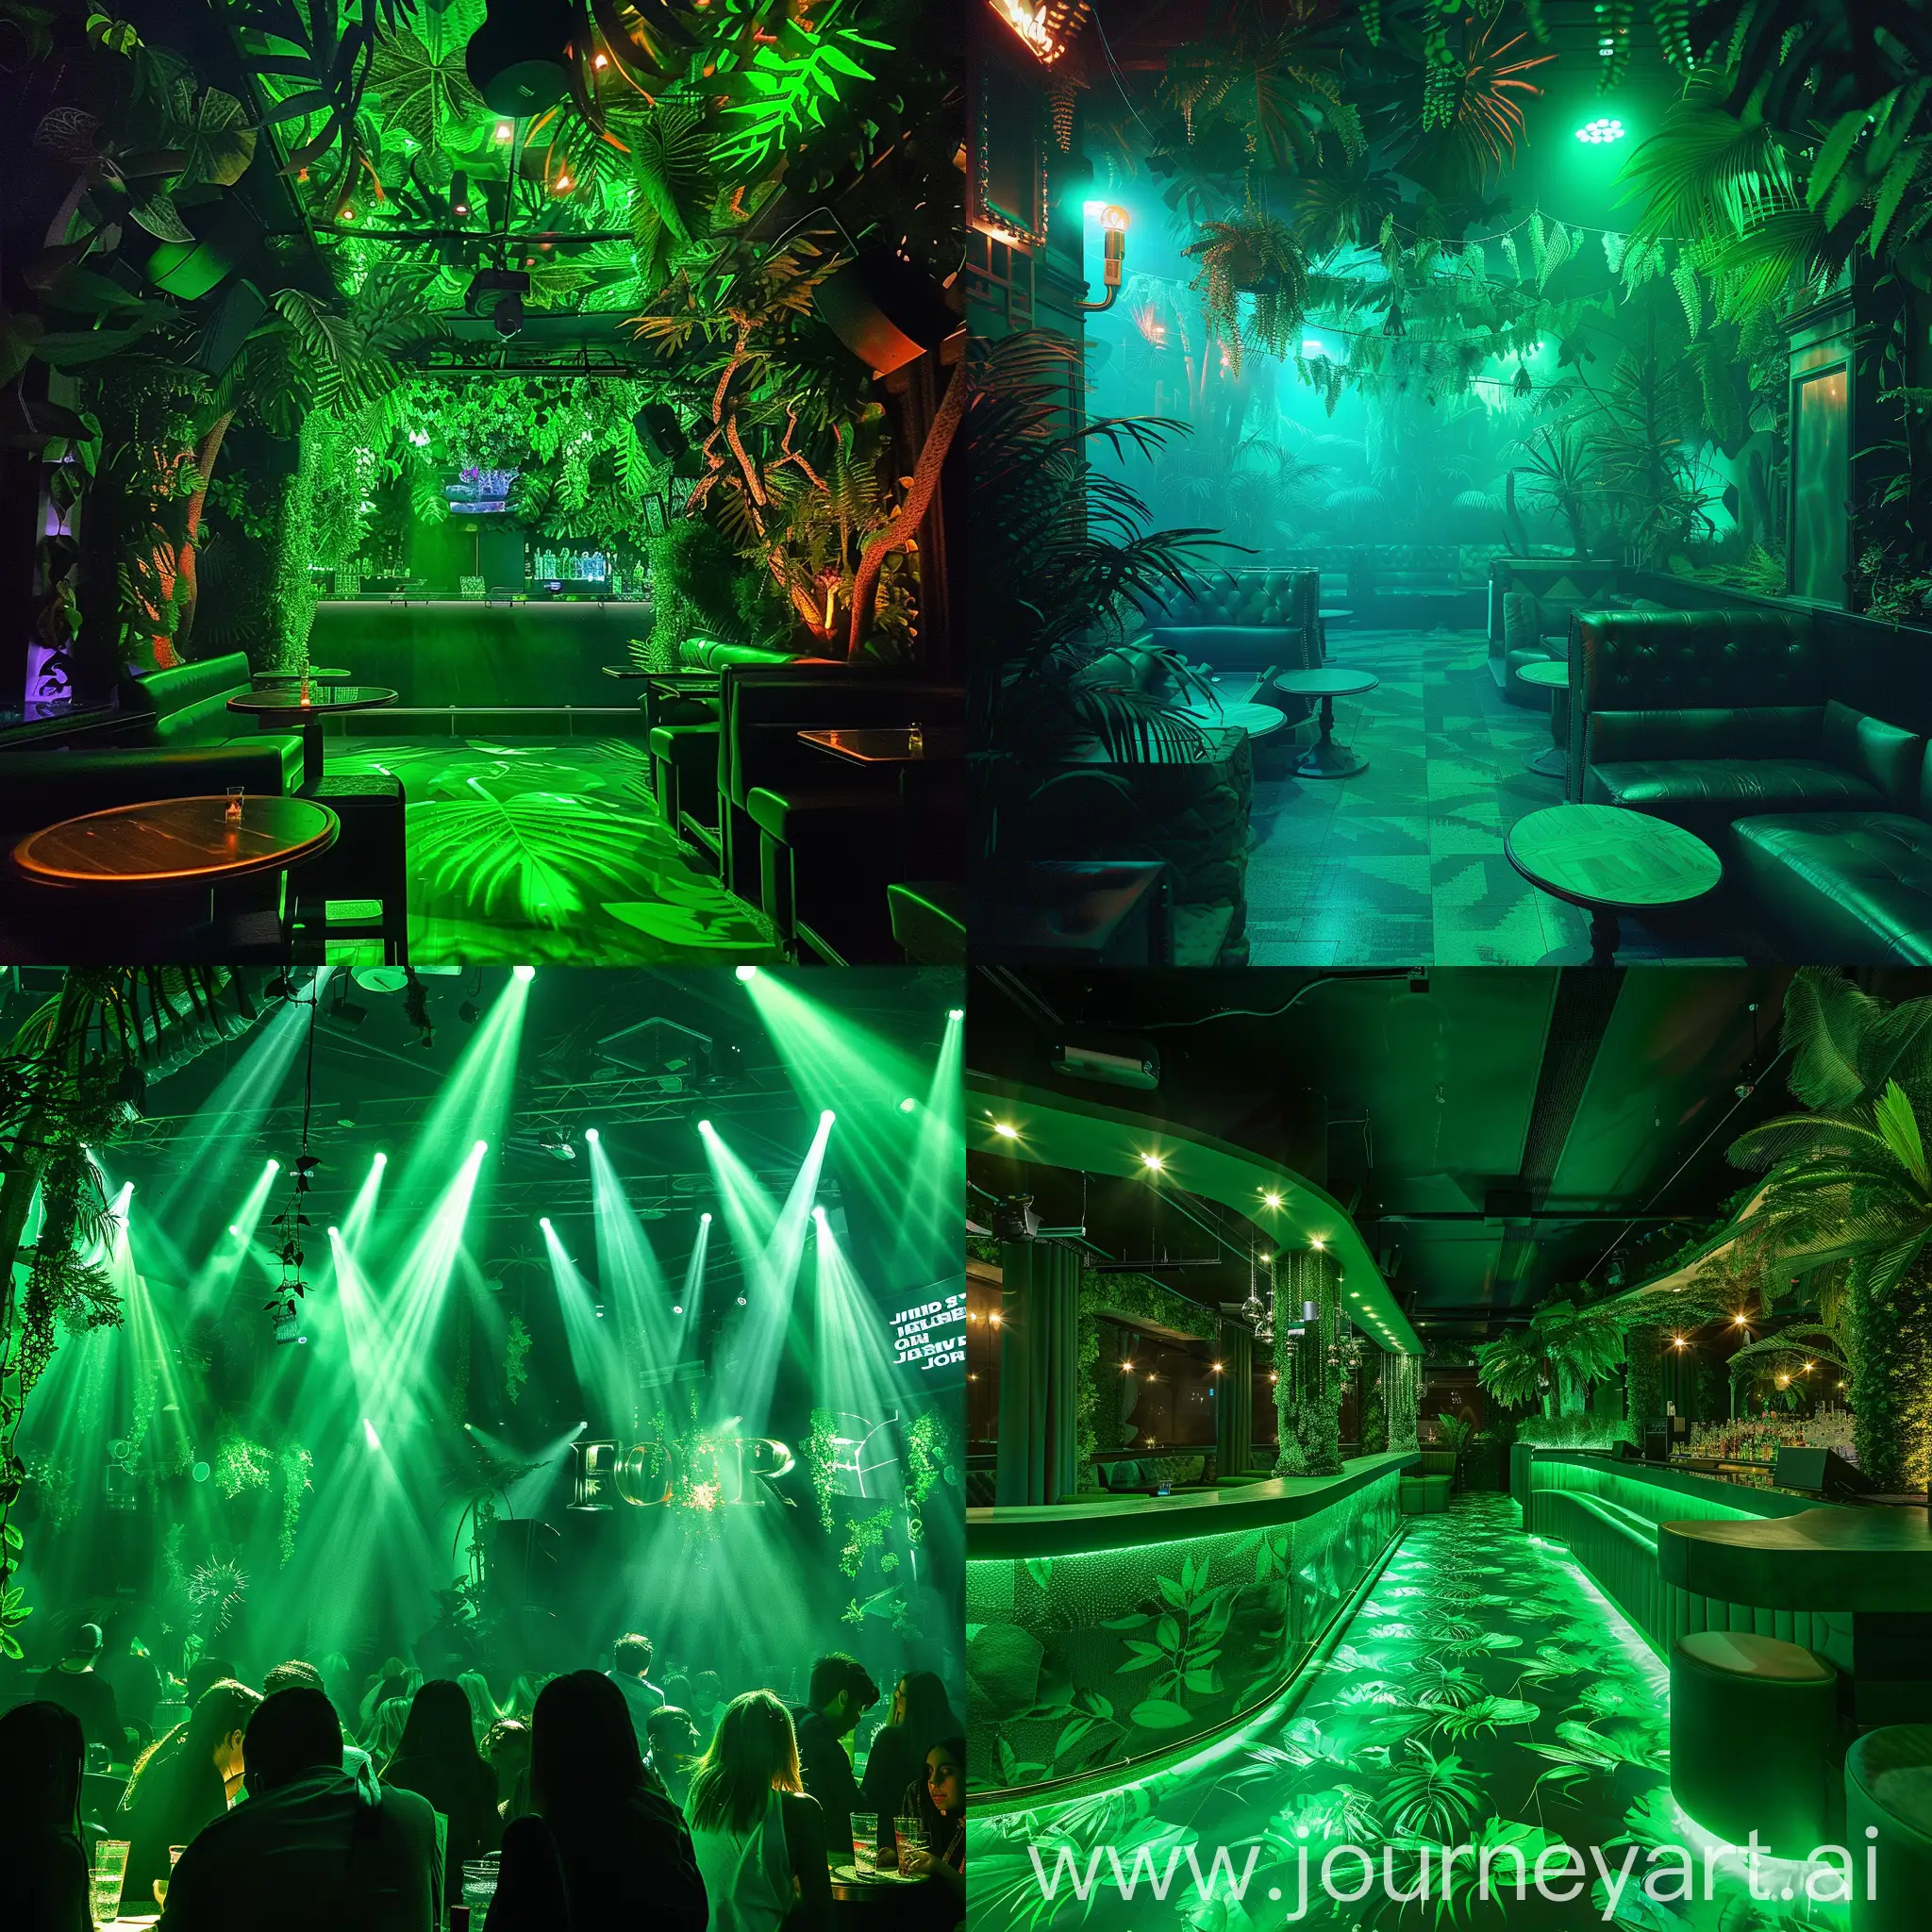 Jungle GREEN in a night club
